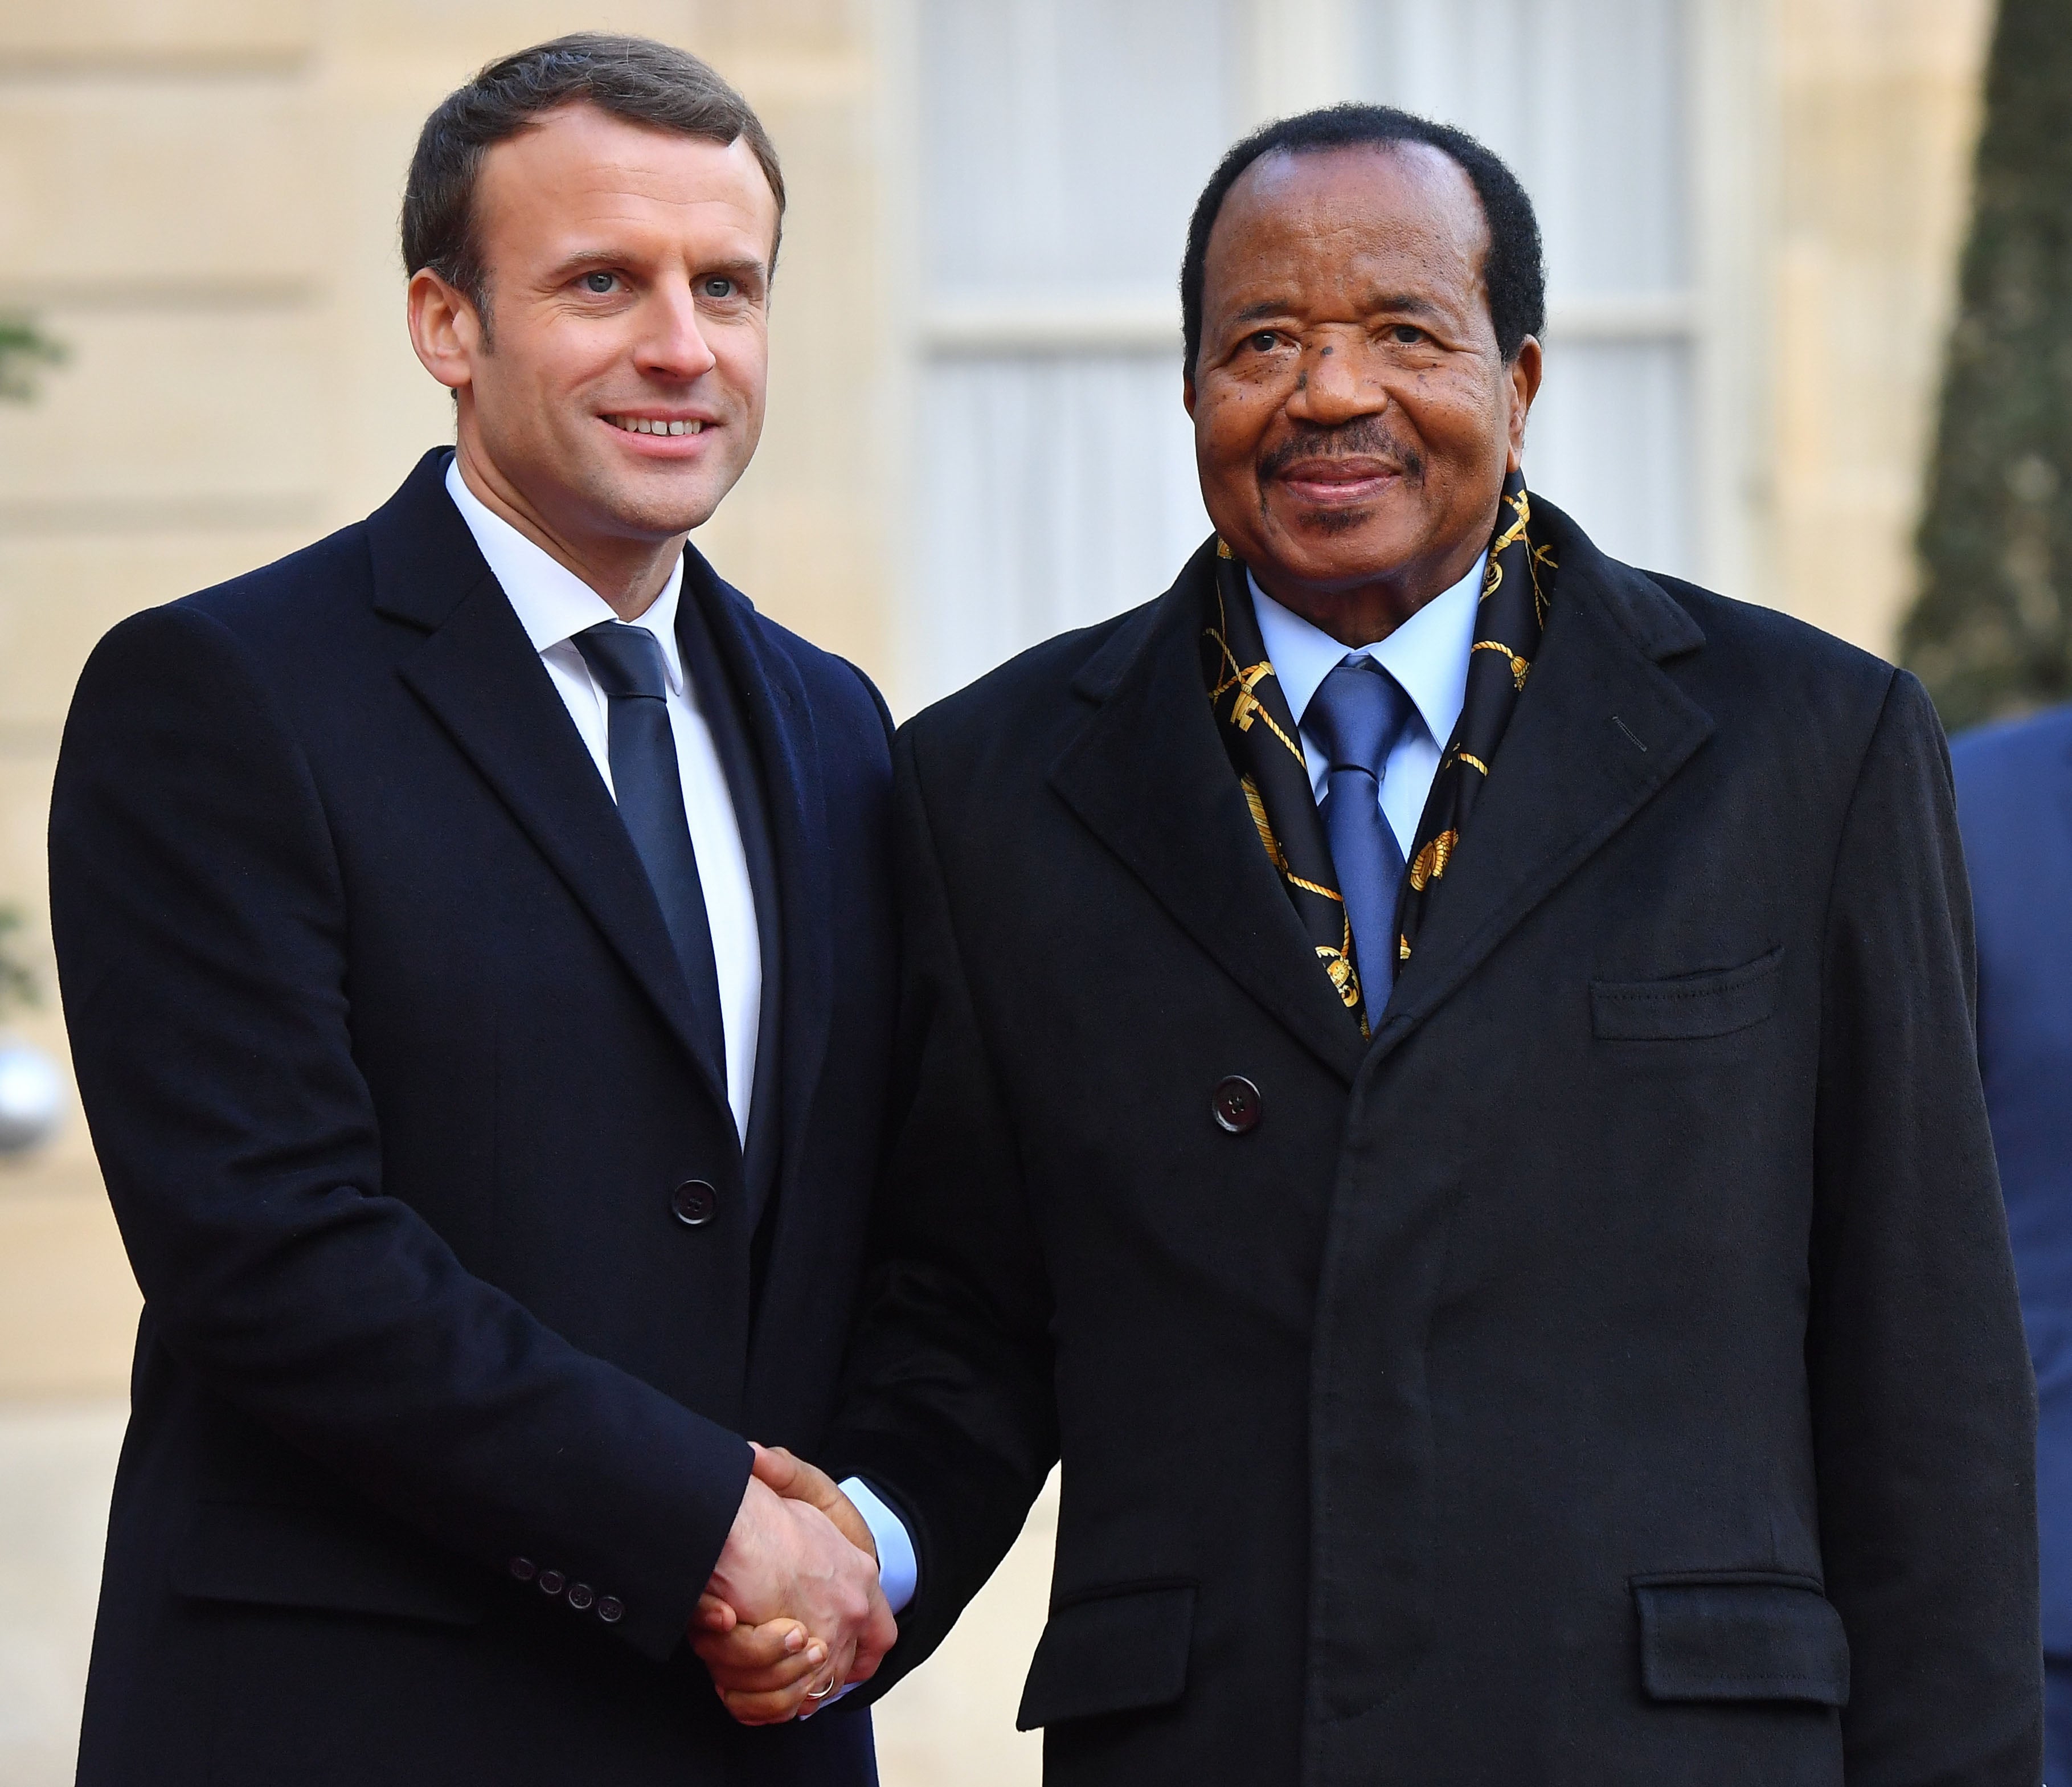 Le président français Emmanuel Macron salue le président camerounais Paul Biya au palais de l'Élysée à Paris, en France, le 12 décembre 2017, lors du One Planet Summit.